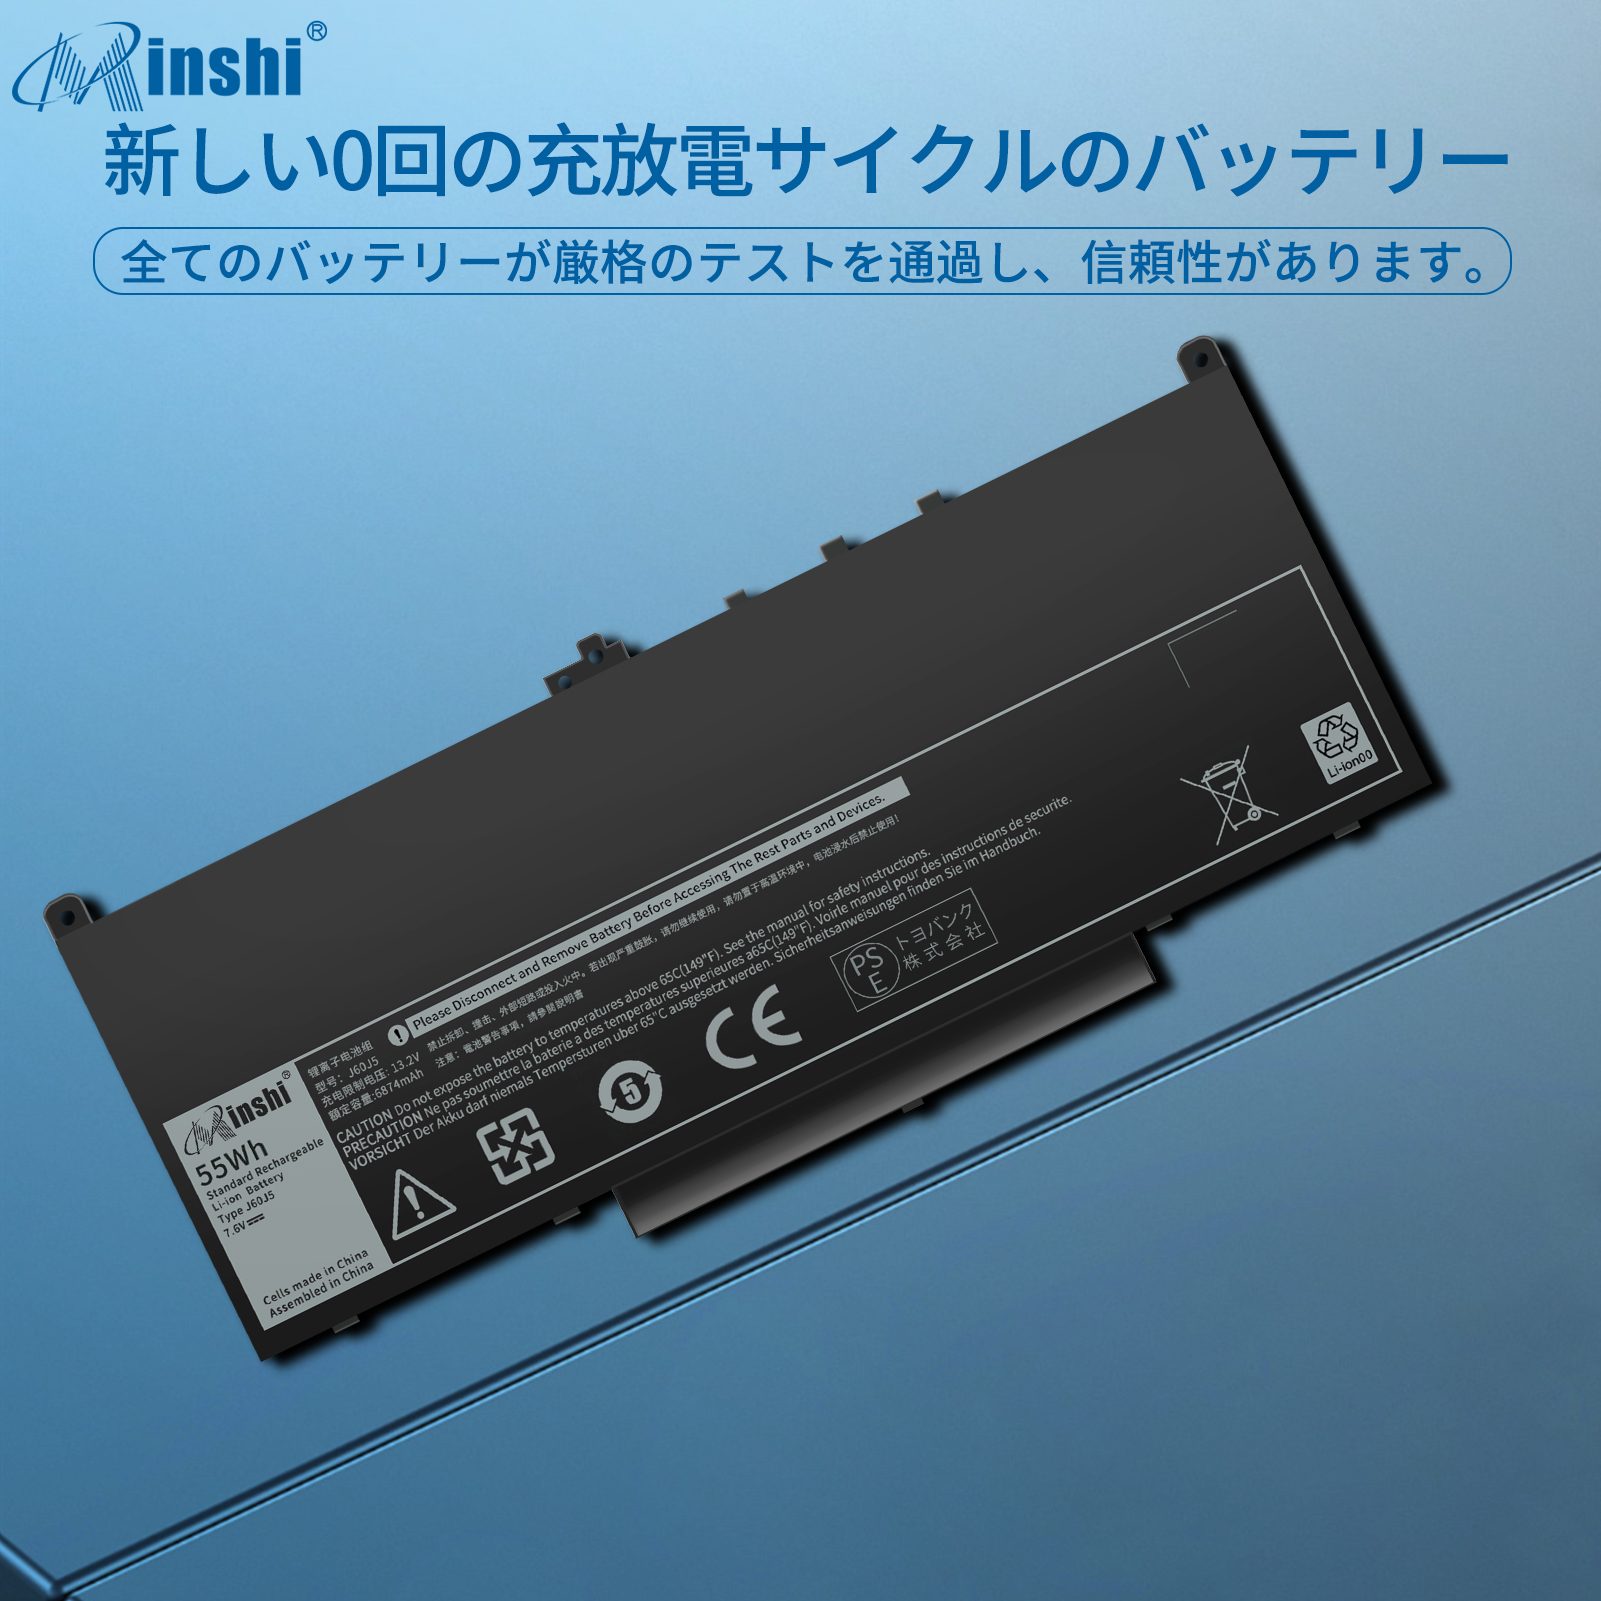  minshi DELL MC34Y 対応 Latitude E7270 E7260 E7470 J60J5 1W2Y2 242WD MC34Y 7300mAh  高品質交換用バッテリー